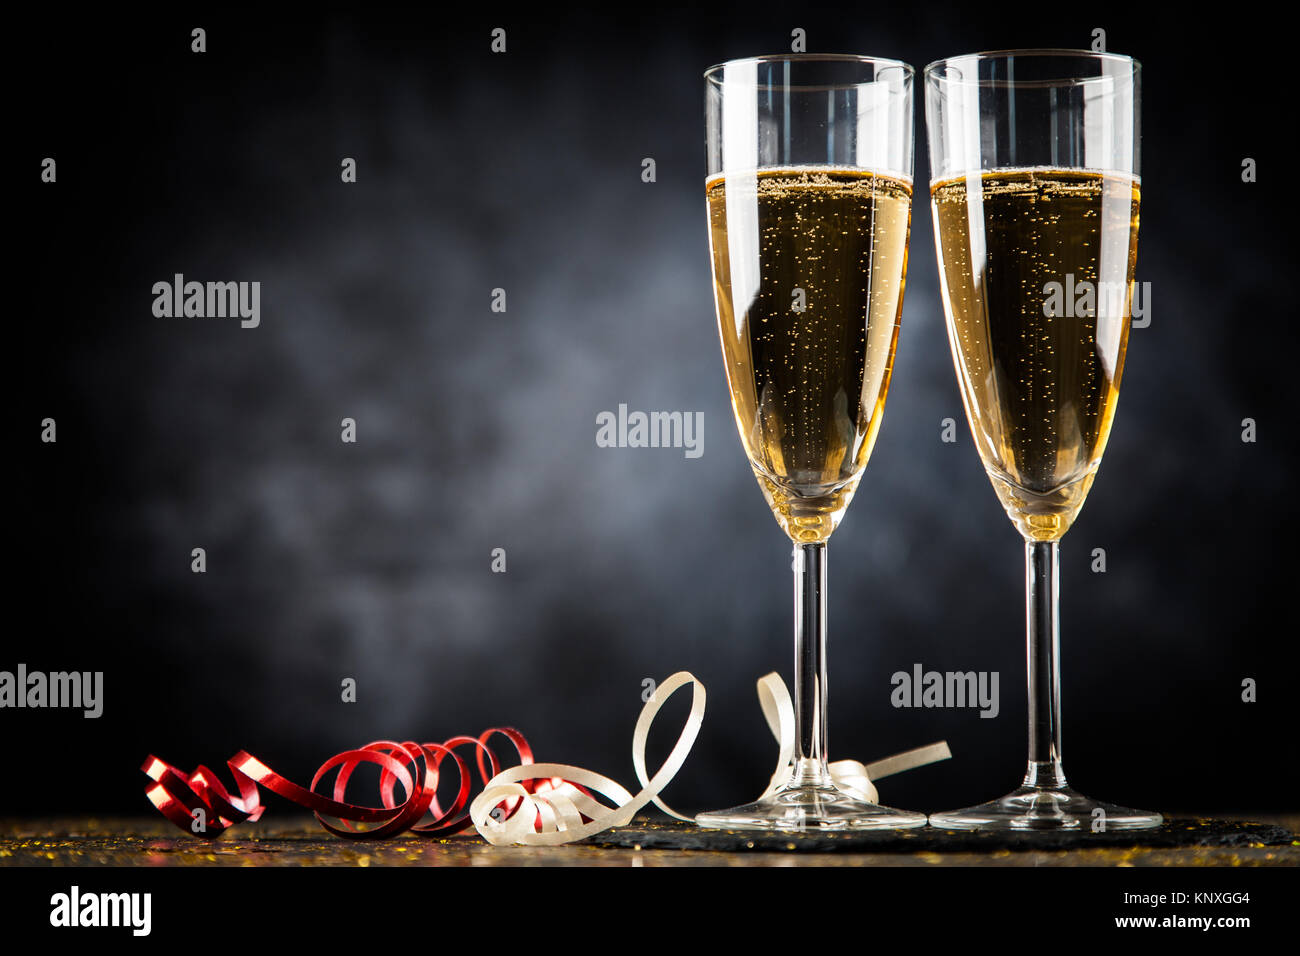 Deux verres de champagne dans la région de golden glitter, fond sombre Banque D'Images